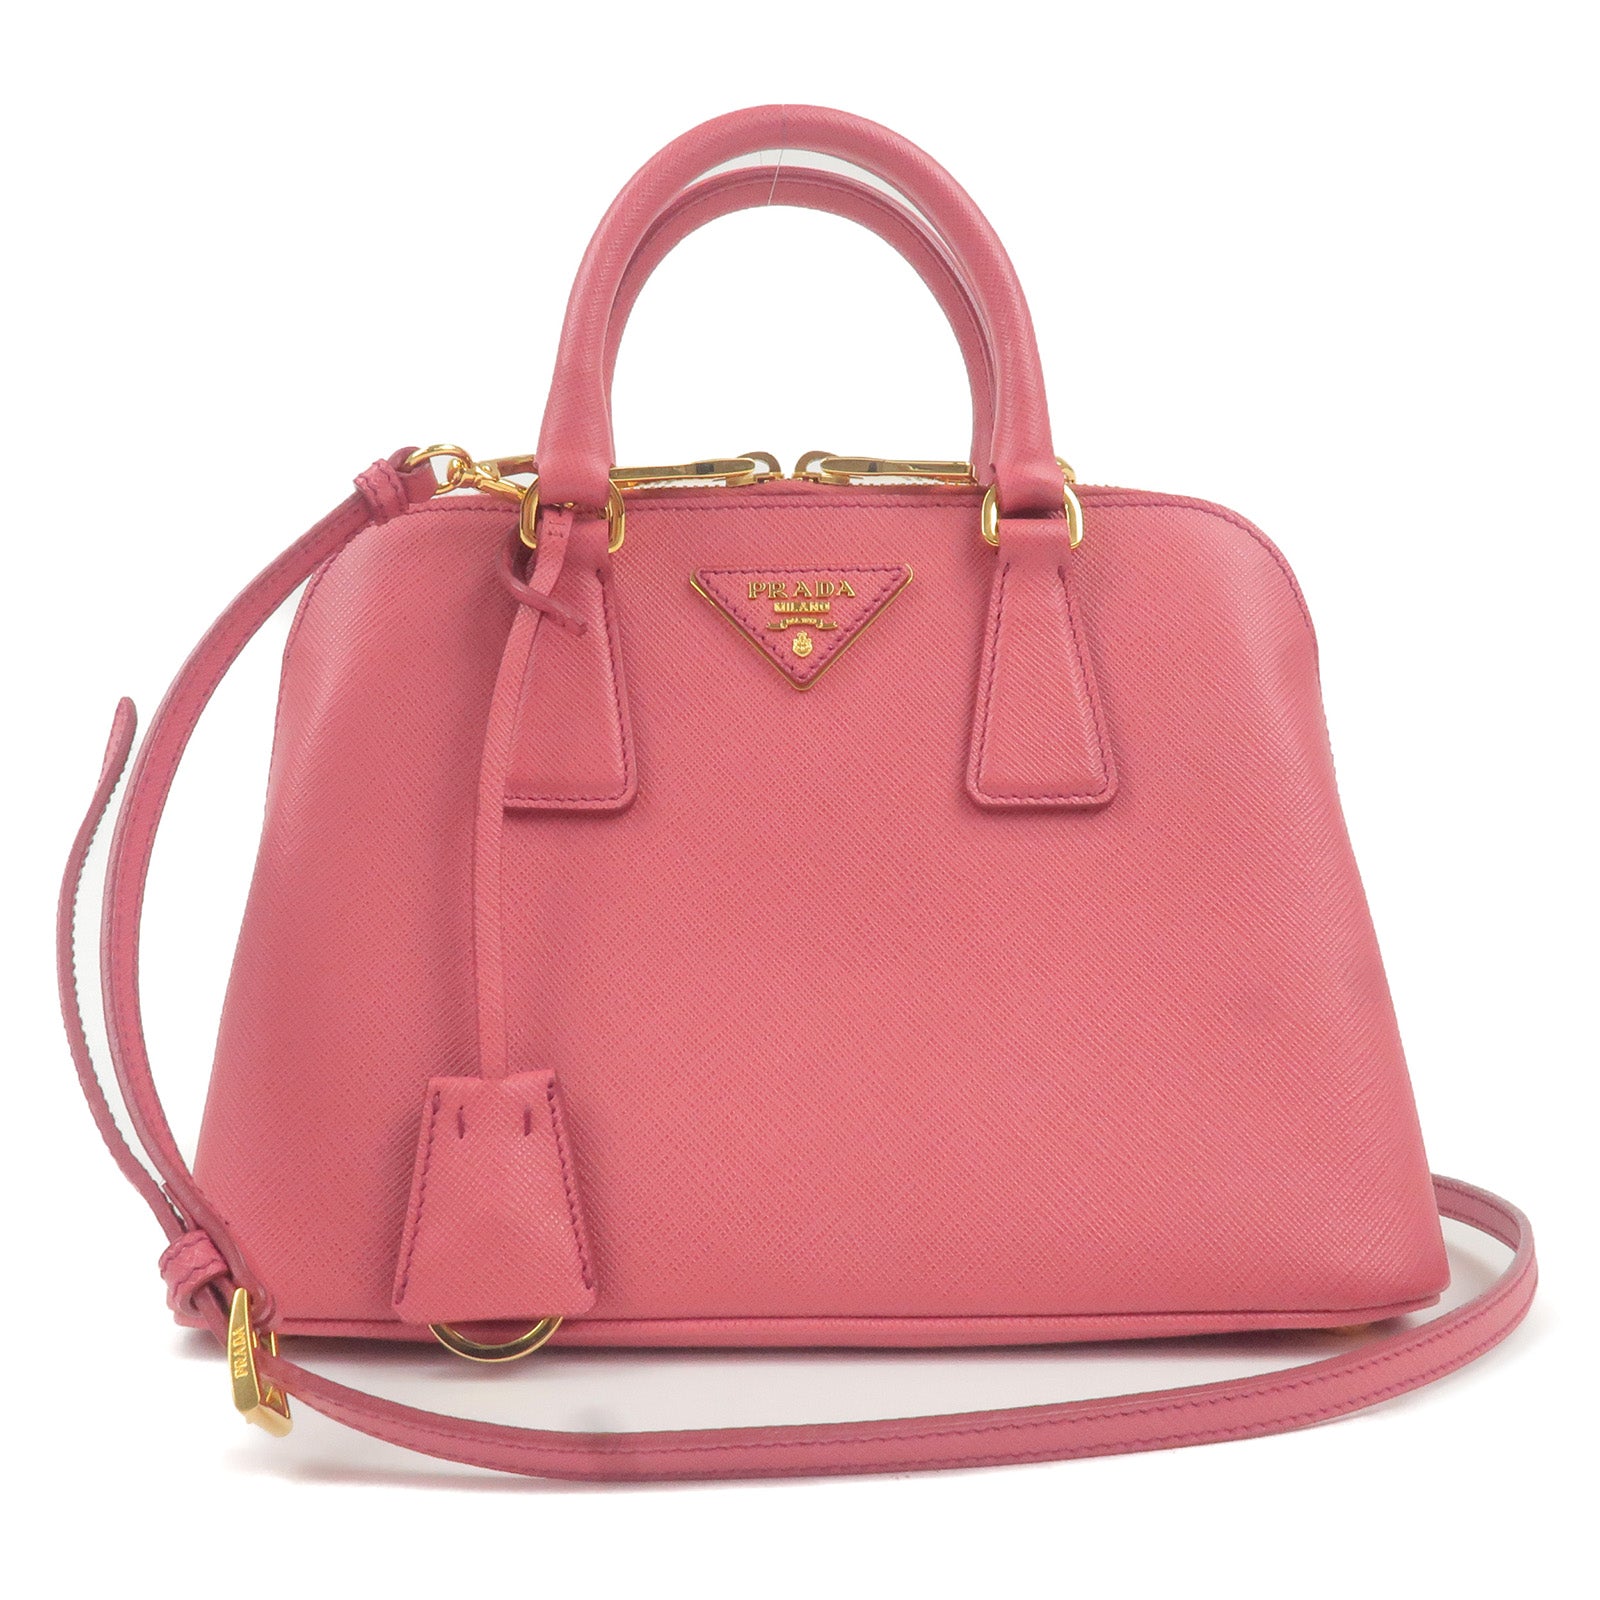 PRADA-Leather-2Way-Hand-Bag-Shoulder-Bag-Pink-BL0838